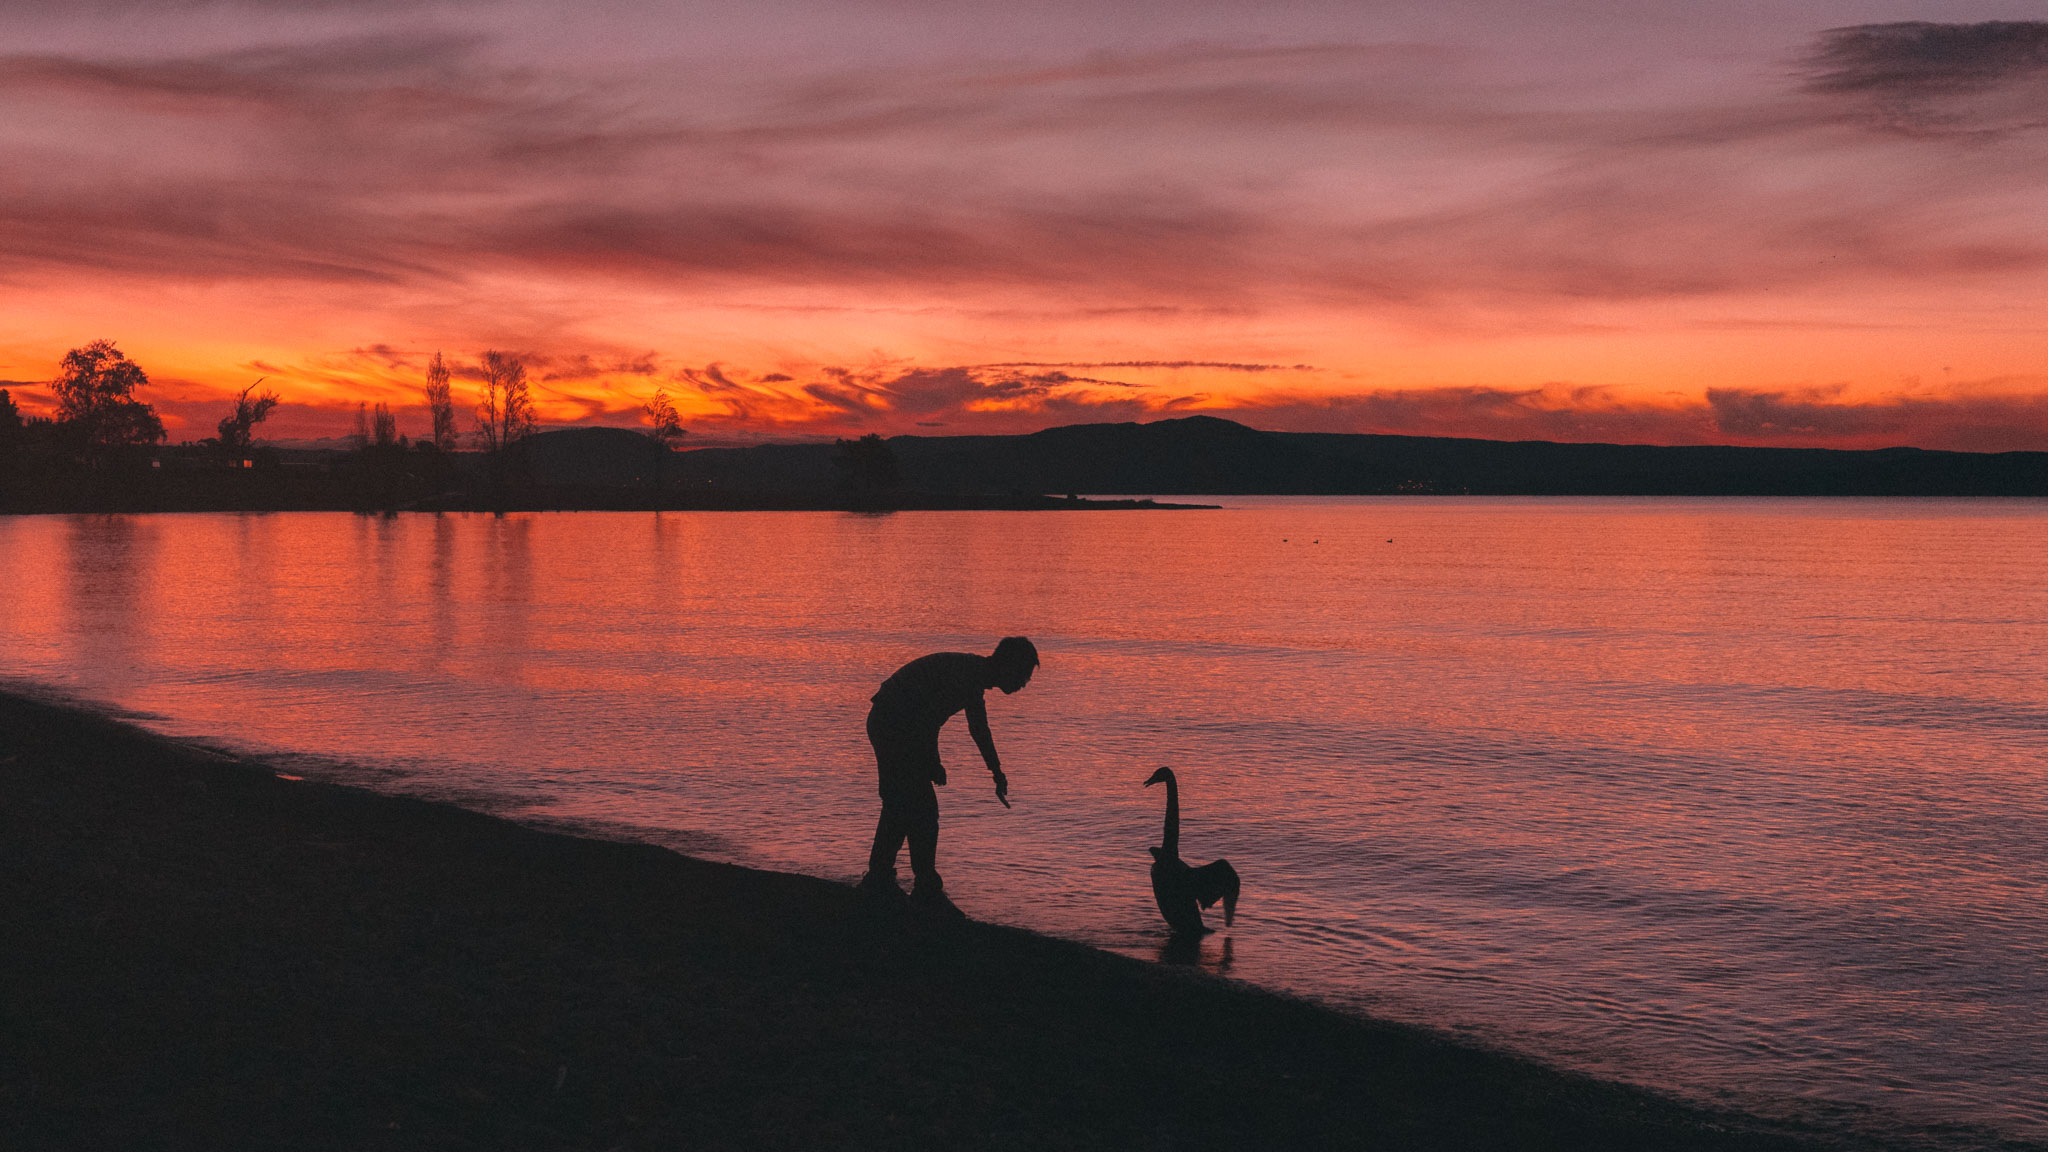 A swan at the bay of Lake Taupo